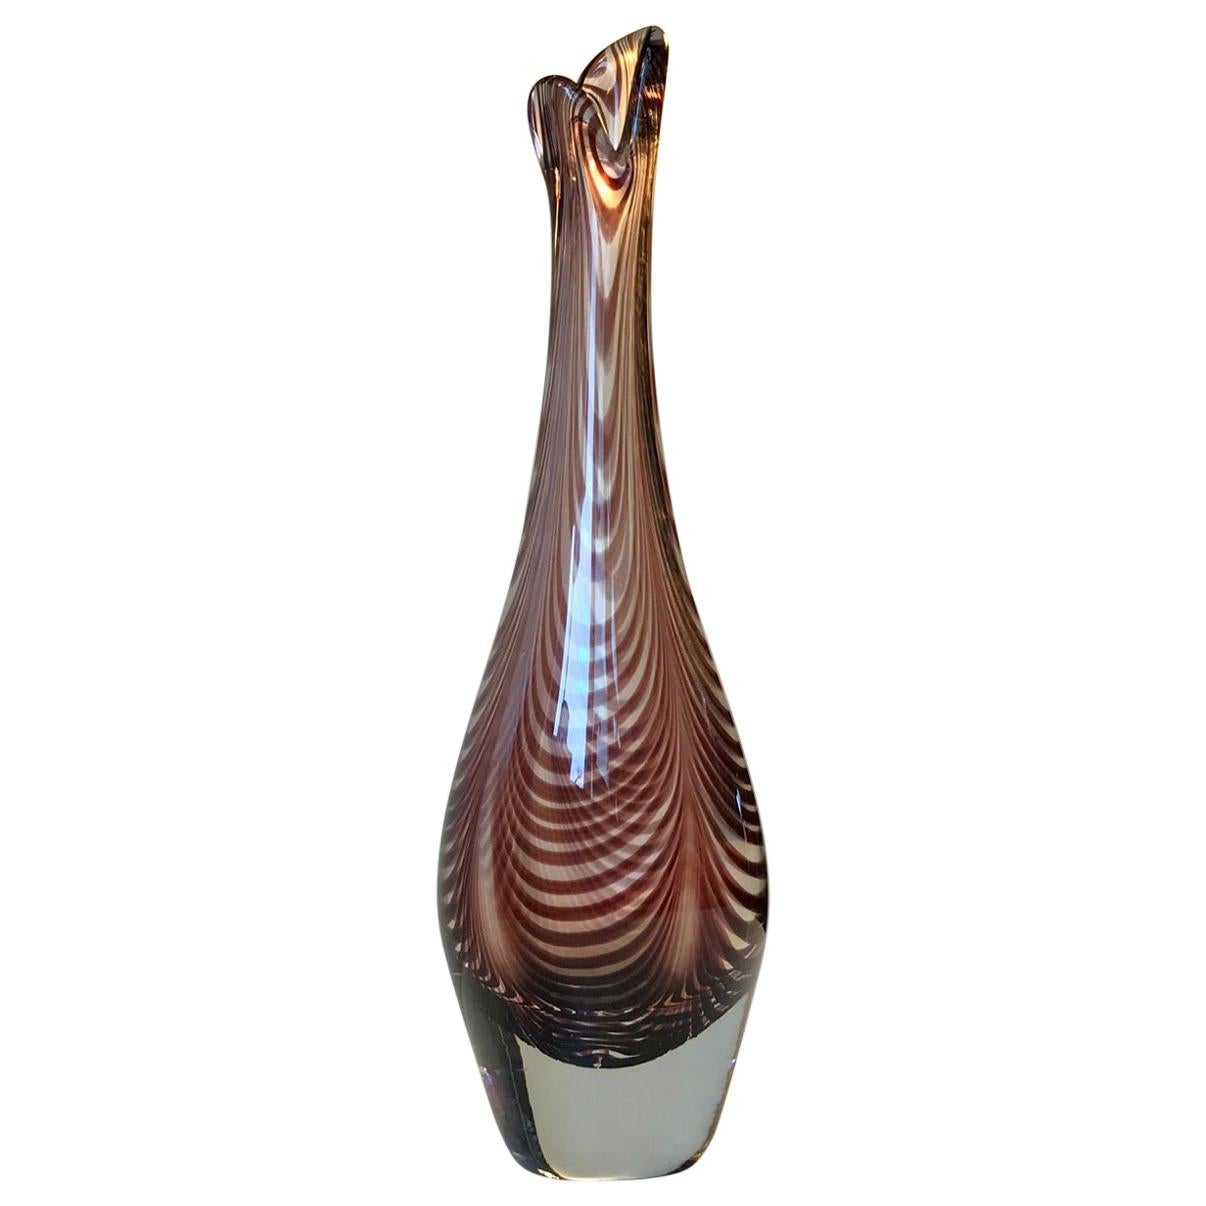 Duckling-Vase aus Kunstglas von Per Ltken für Kastrup/Holmegaard, 1950er Jahre